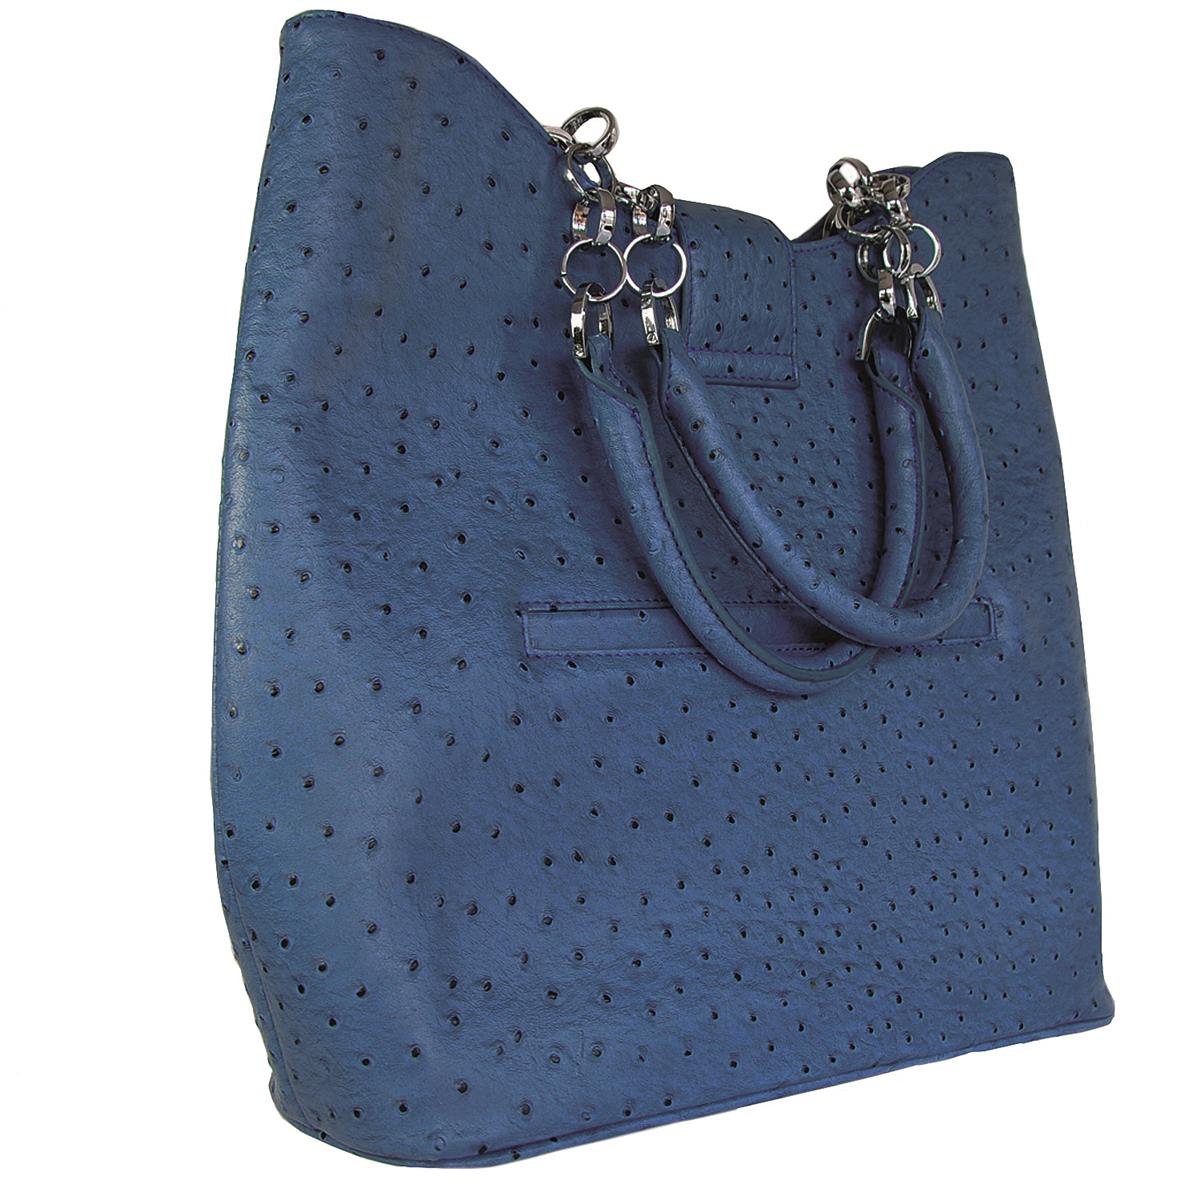 Glass Handbag | Tote Bag Blue